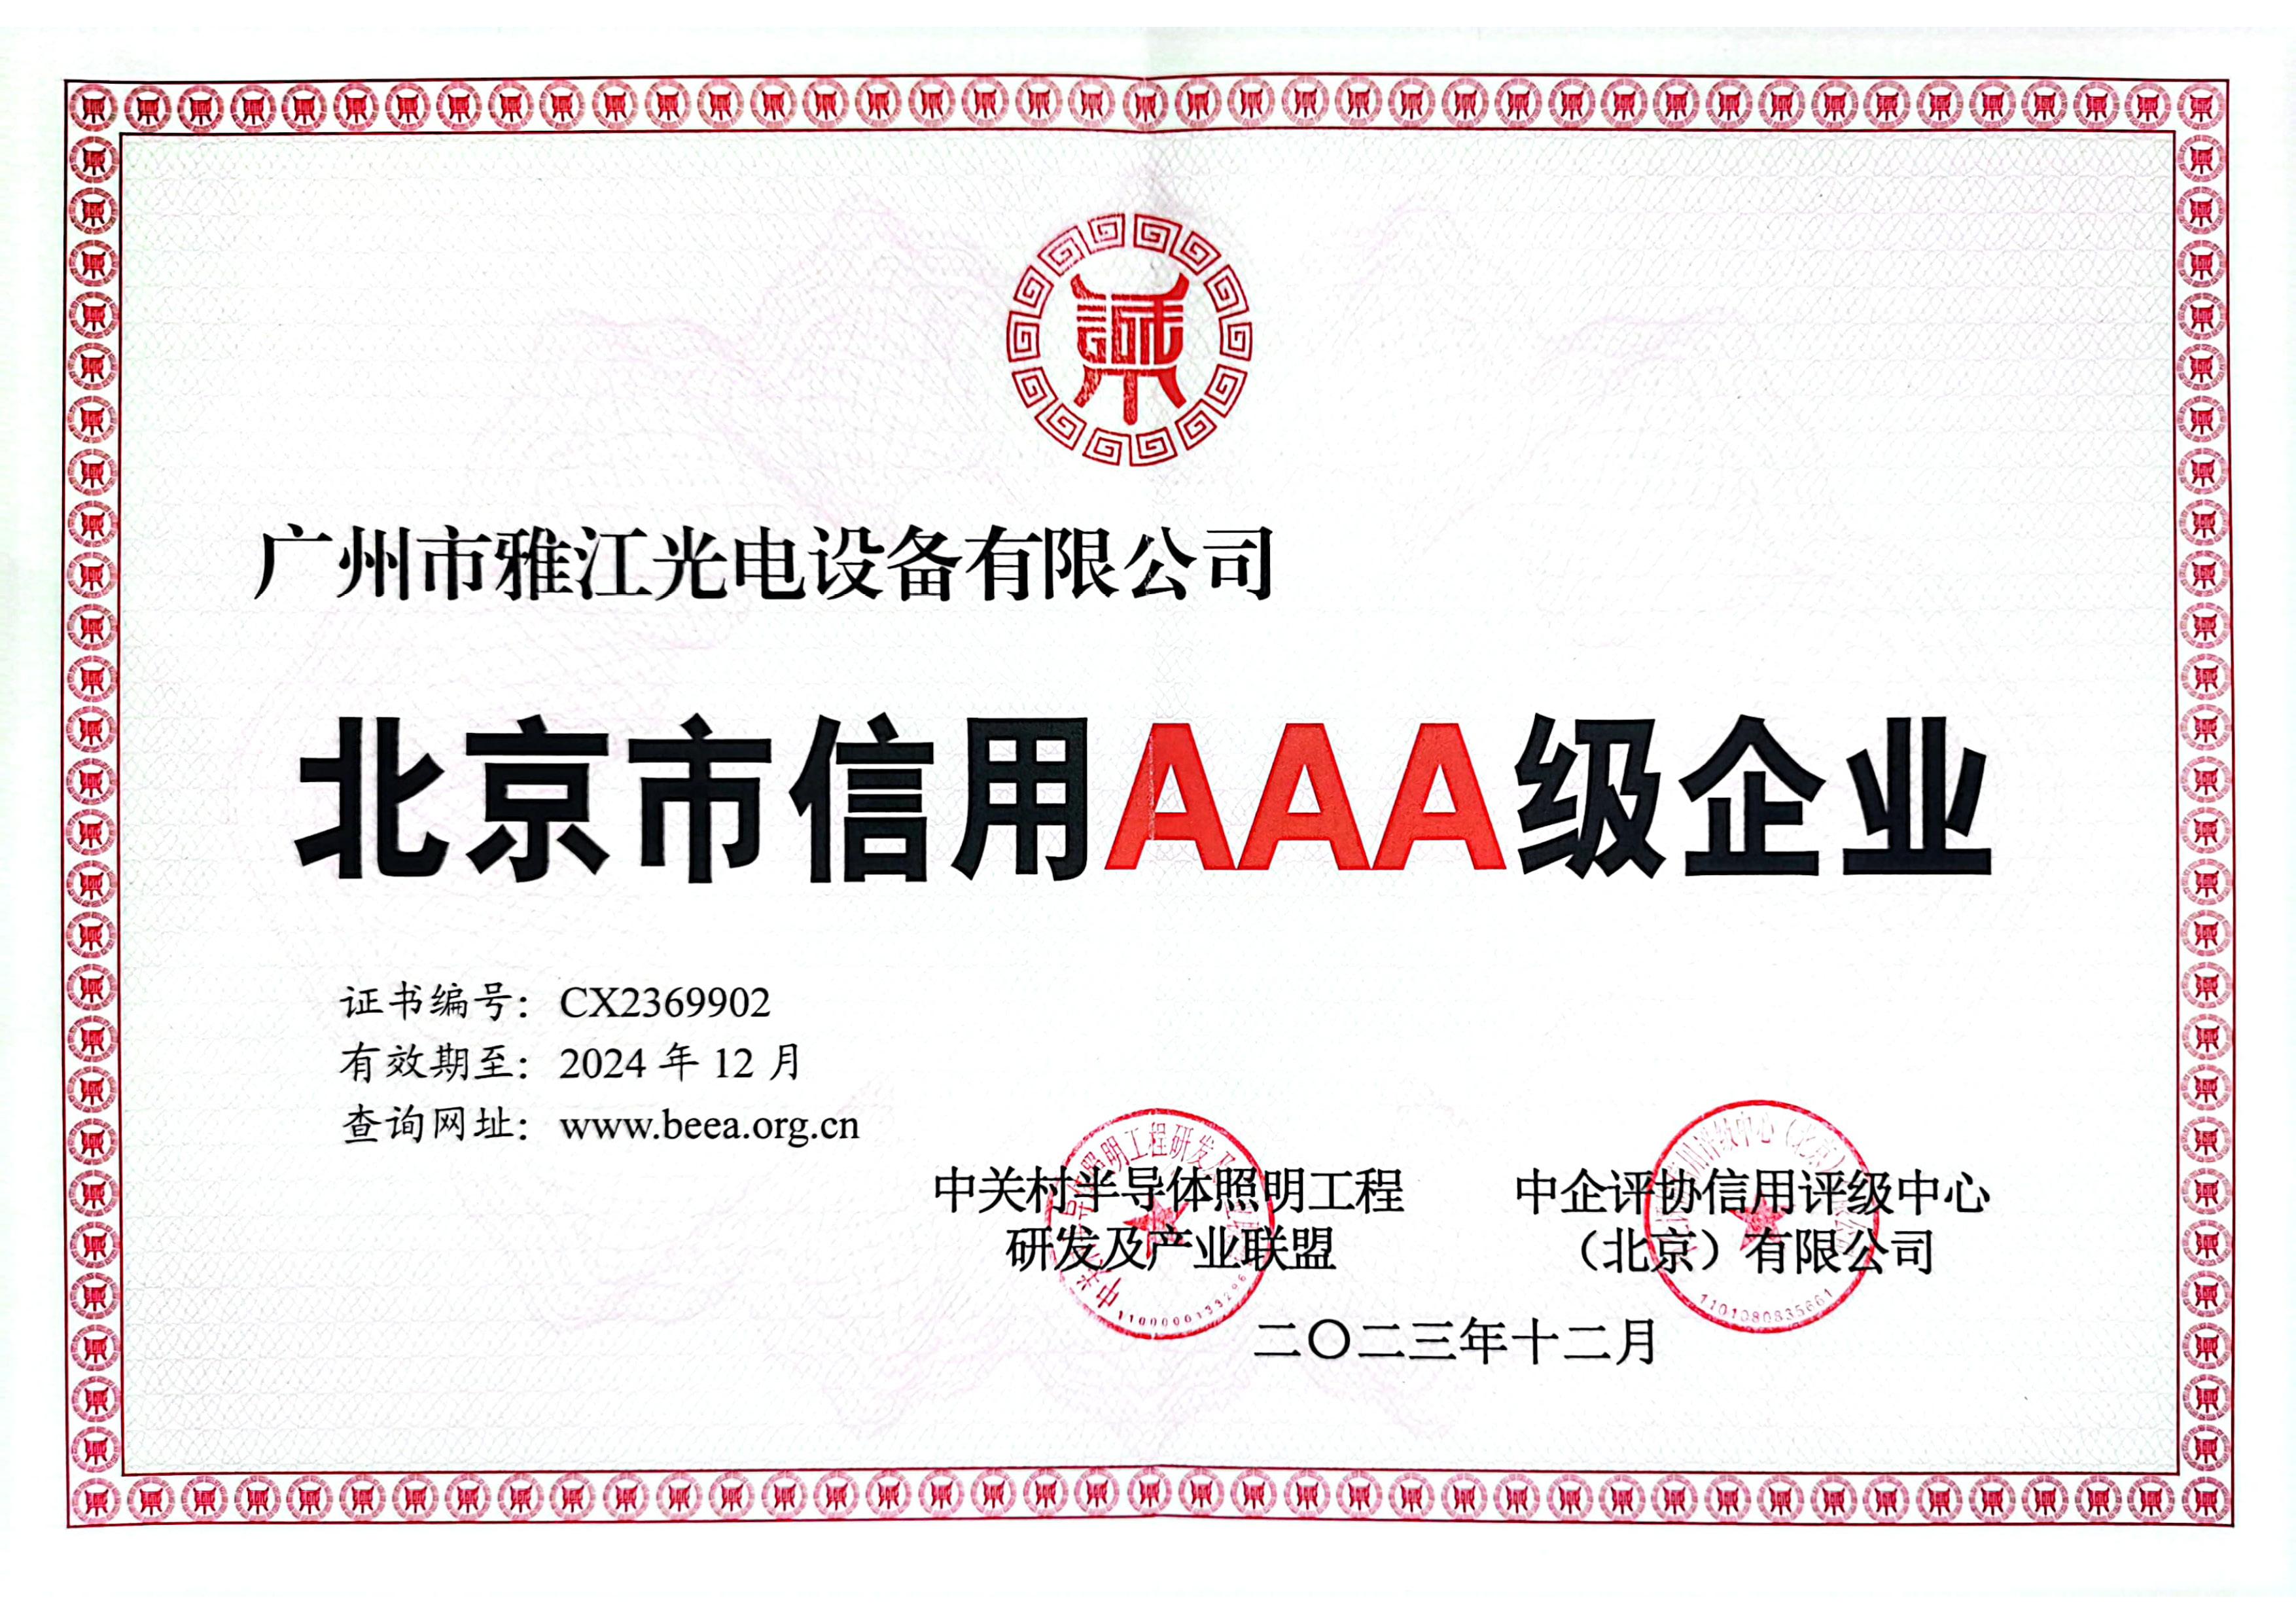 Beijing AAA credit enterprise certificate